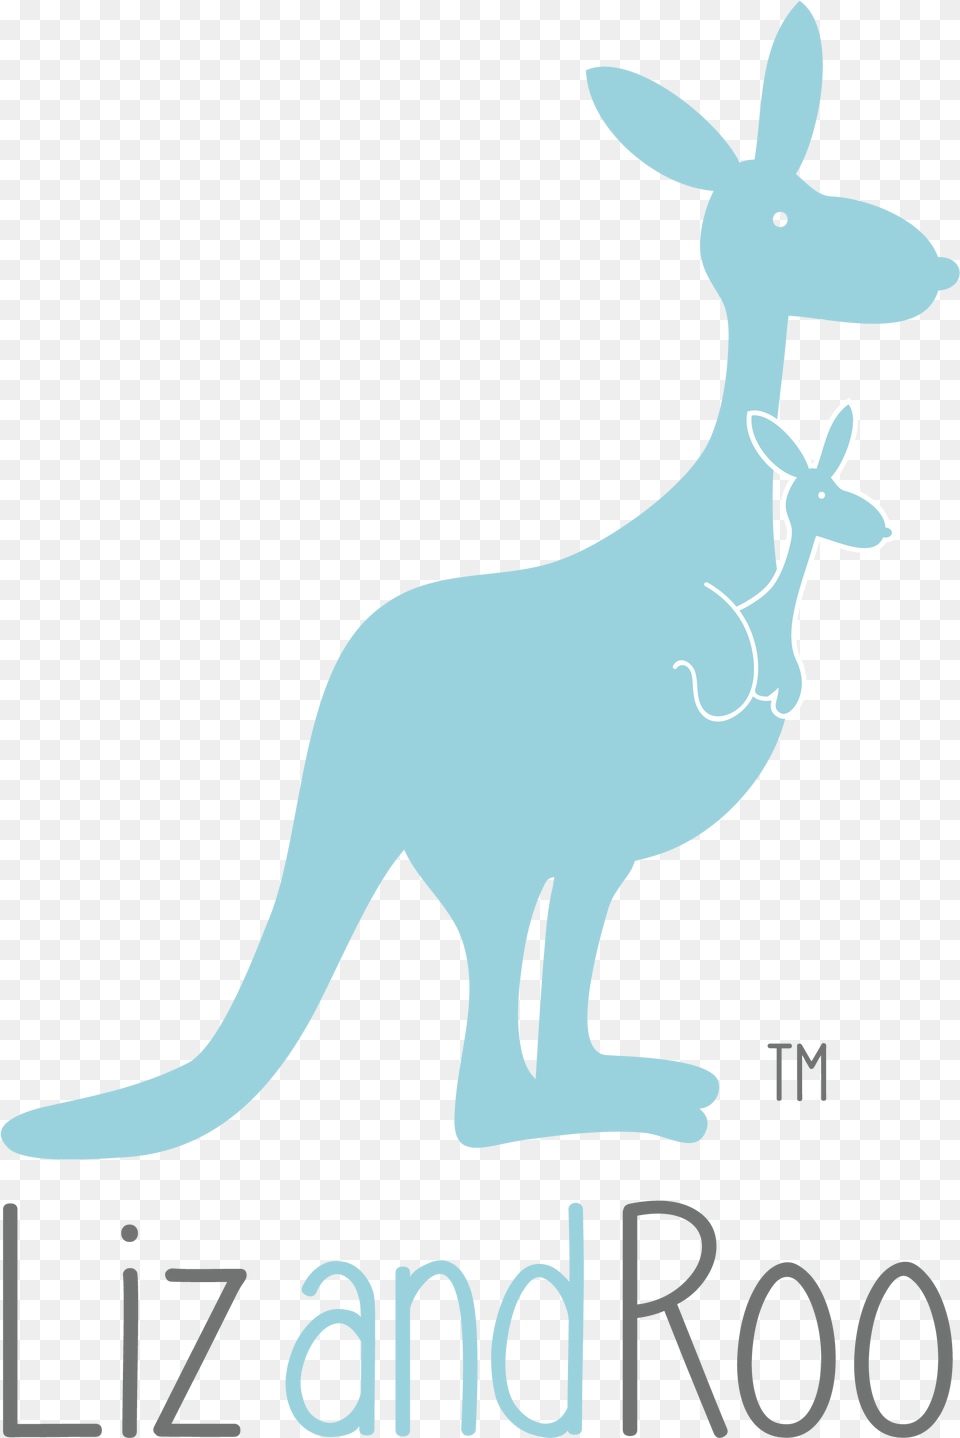 Kangaroo, Animal, Mammal Free Transparent Png